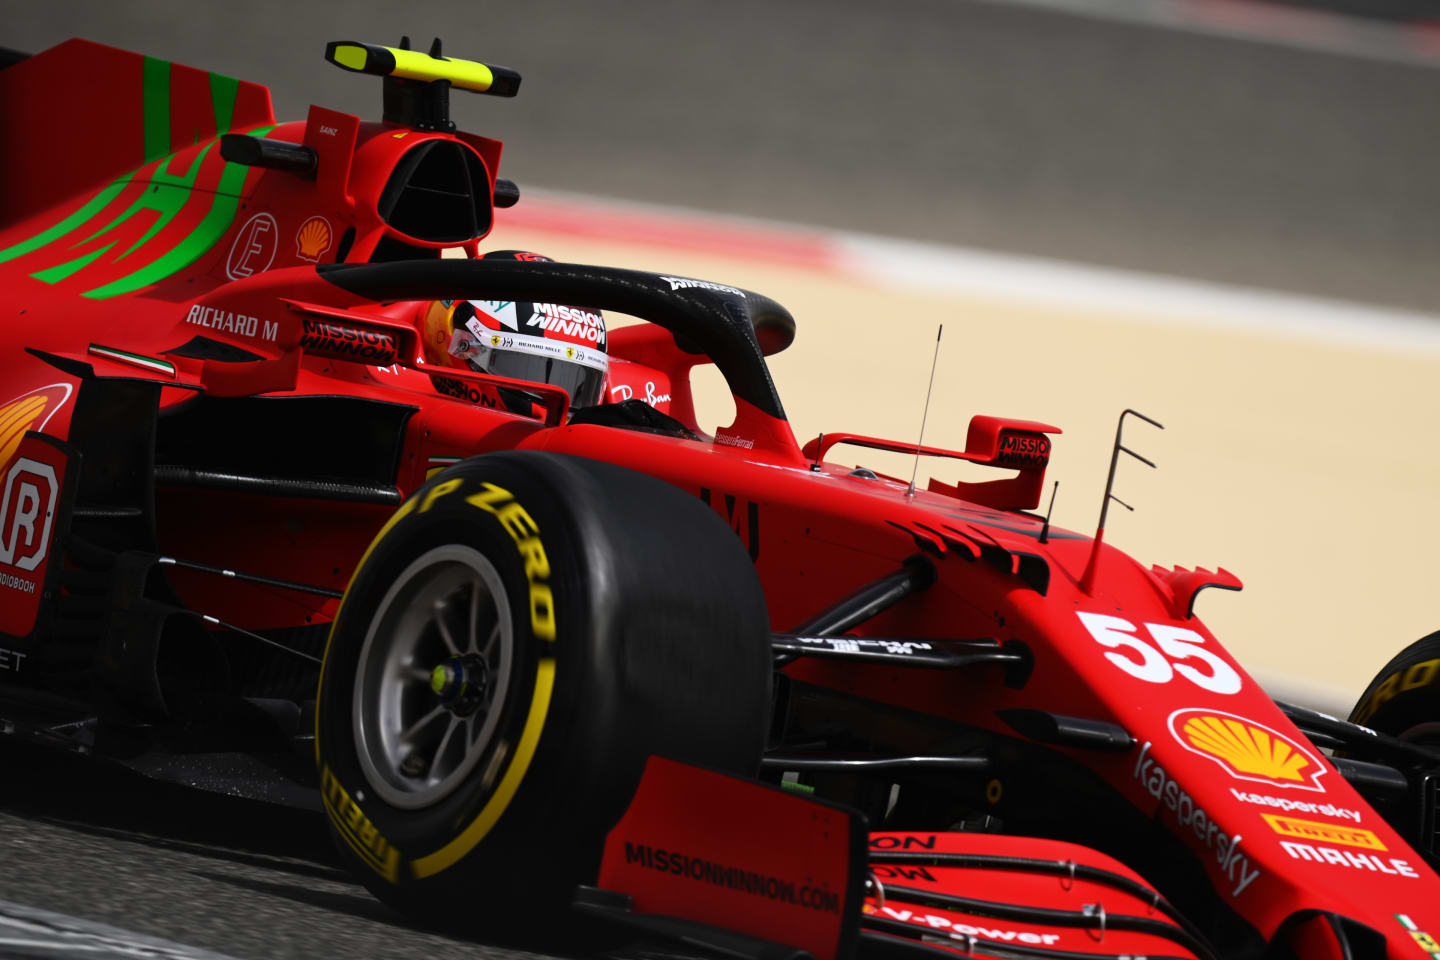 BAHRAIN, BAHRAIN - MARCH 13: Carlos Sainz of Spain driving the (55) Scuderia Ferrari SF21 on track